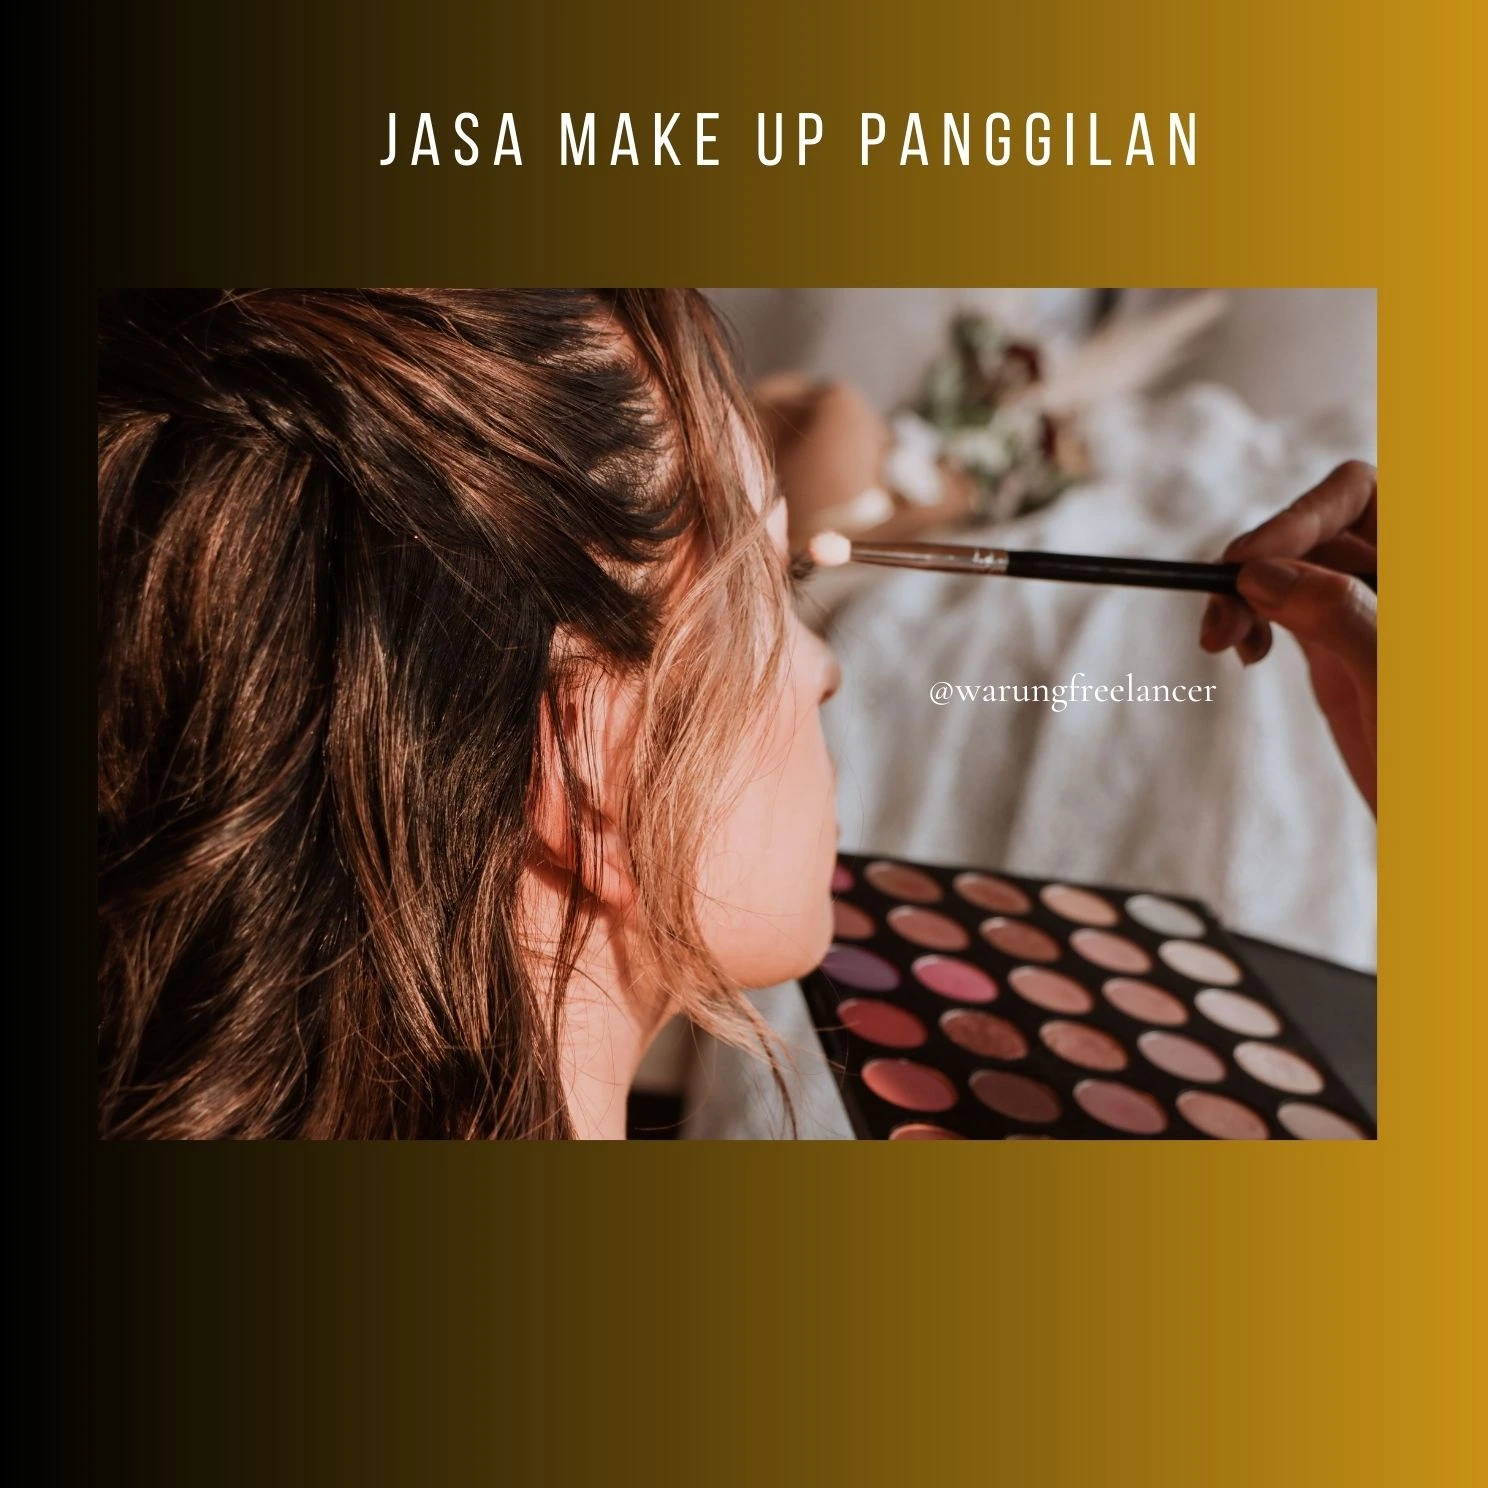 Jasa Make Up Panggilan